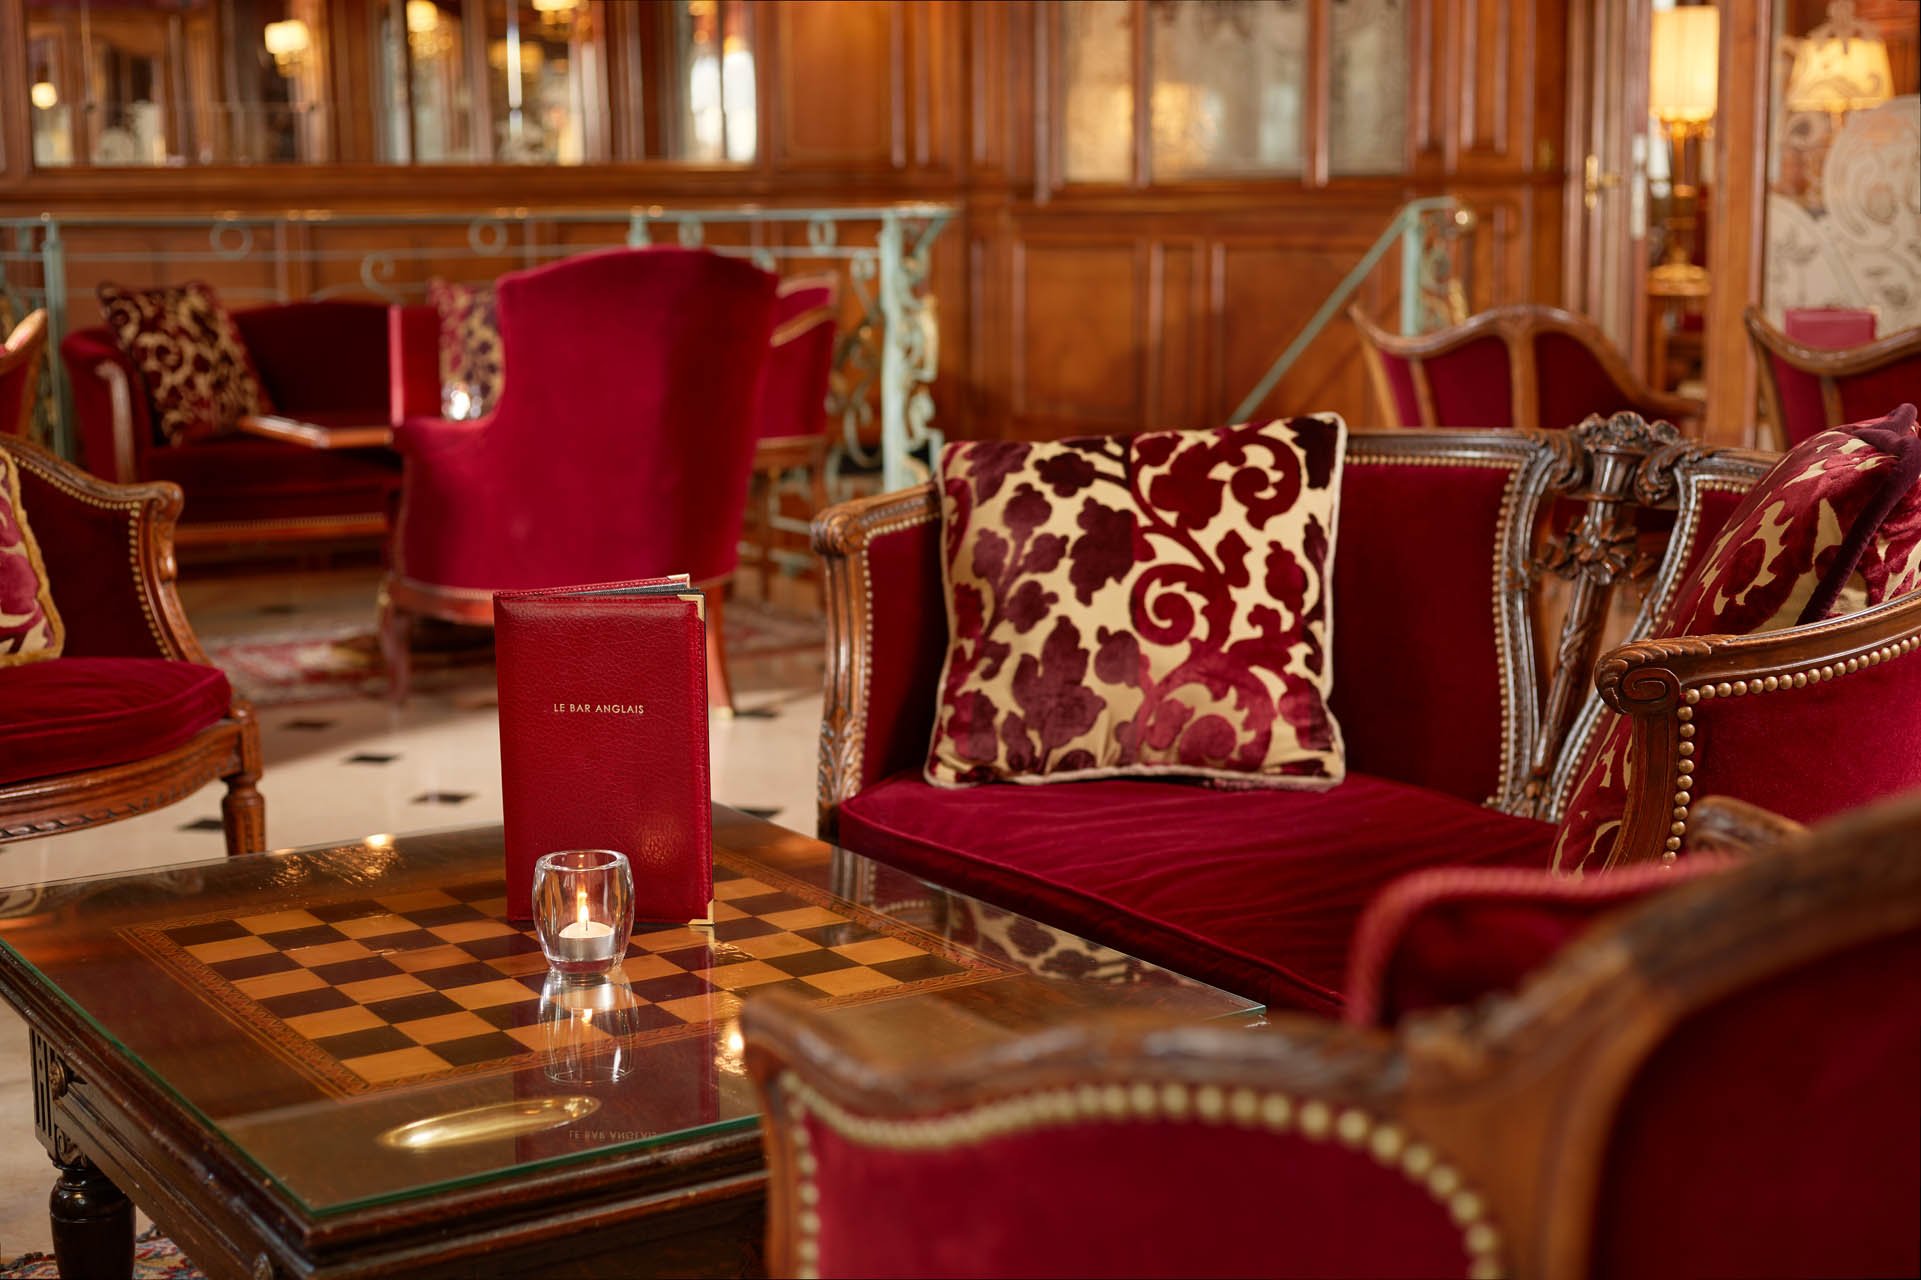 Regina Louvre Hotel - Tea salon